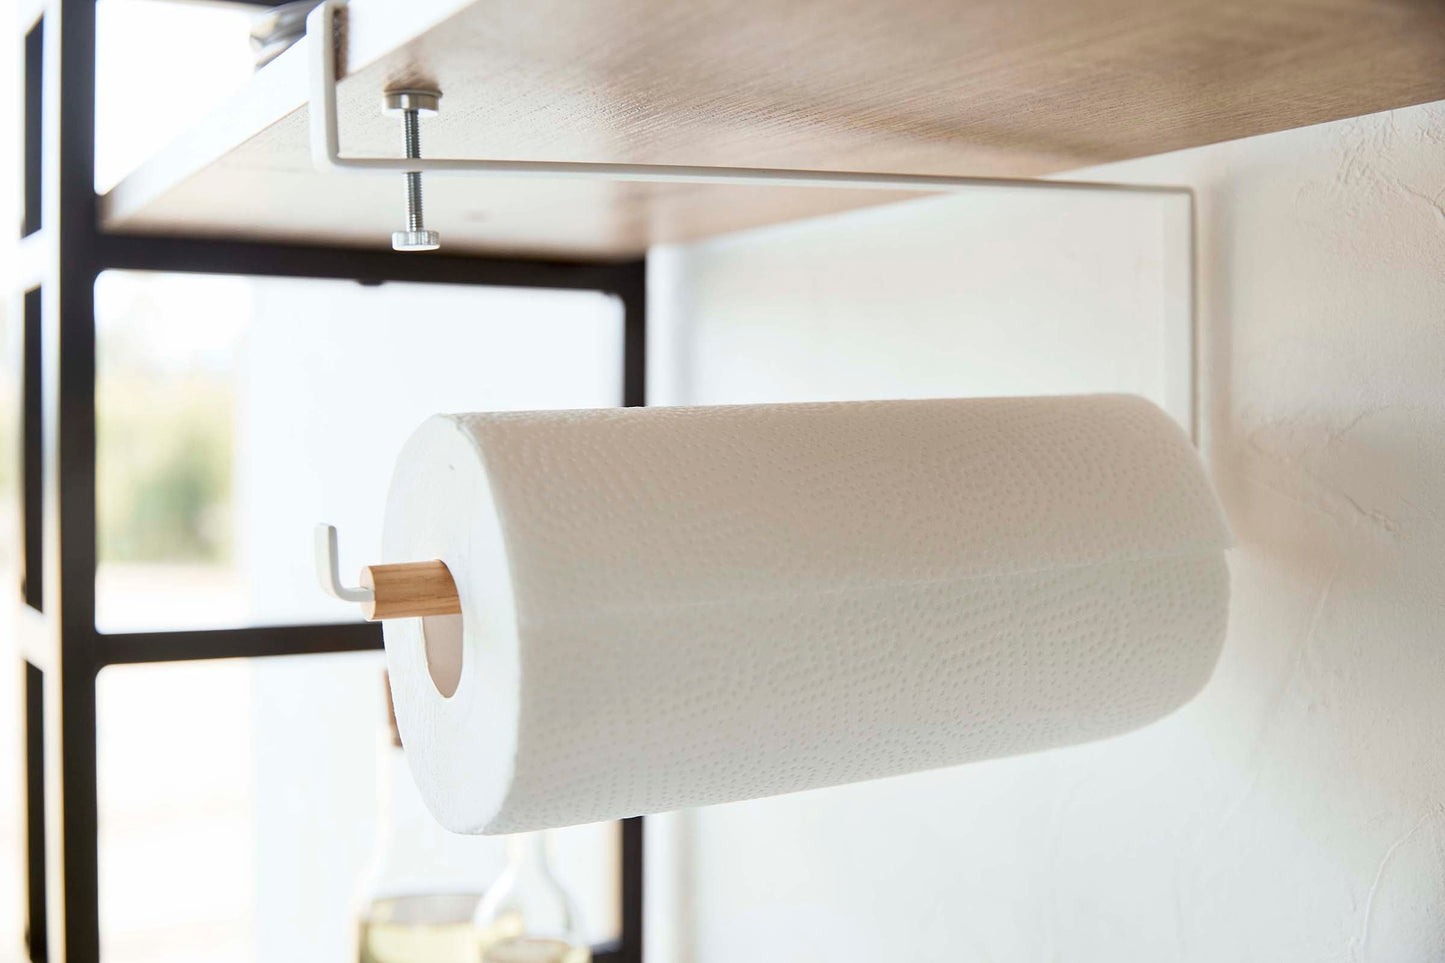 Undershelf Paper Towel Holder - Steel + Wood